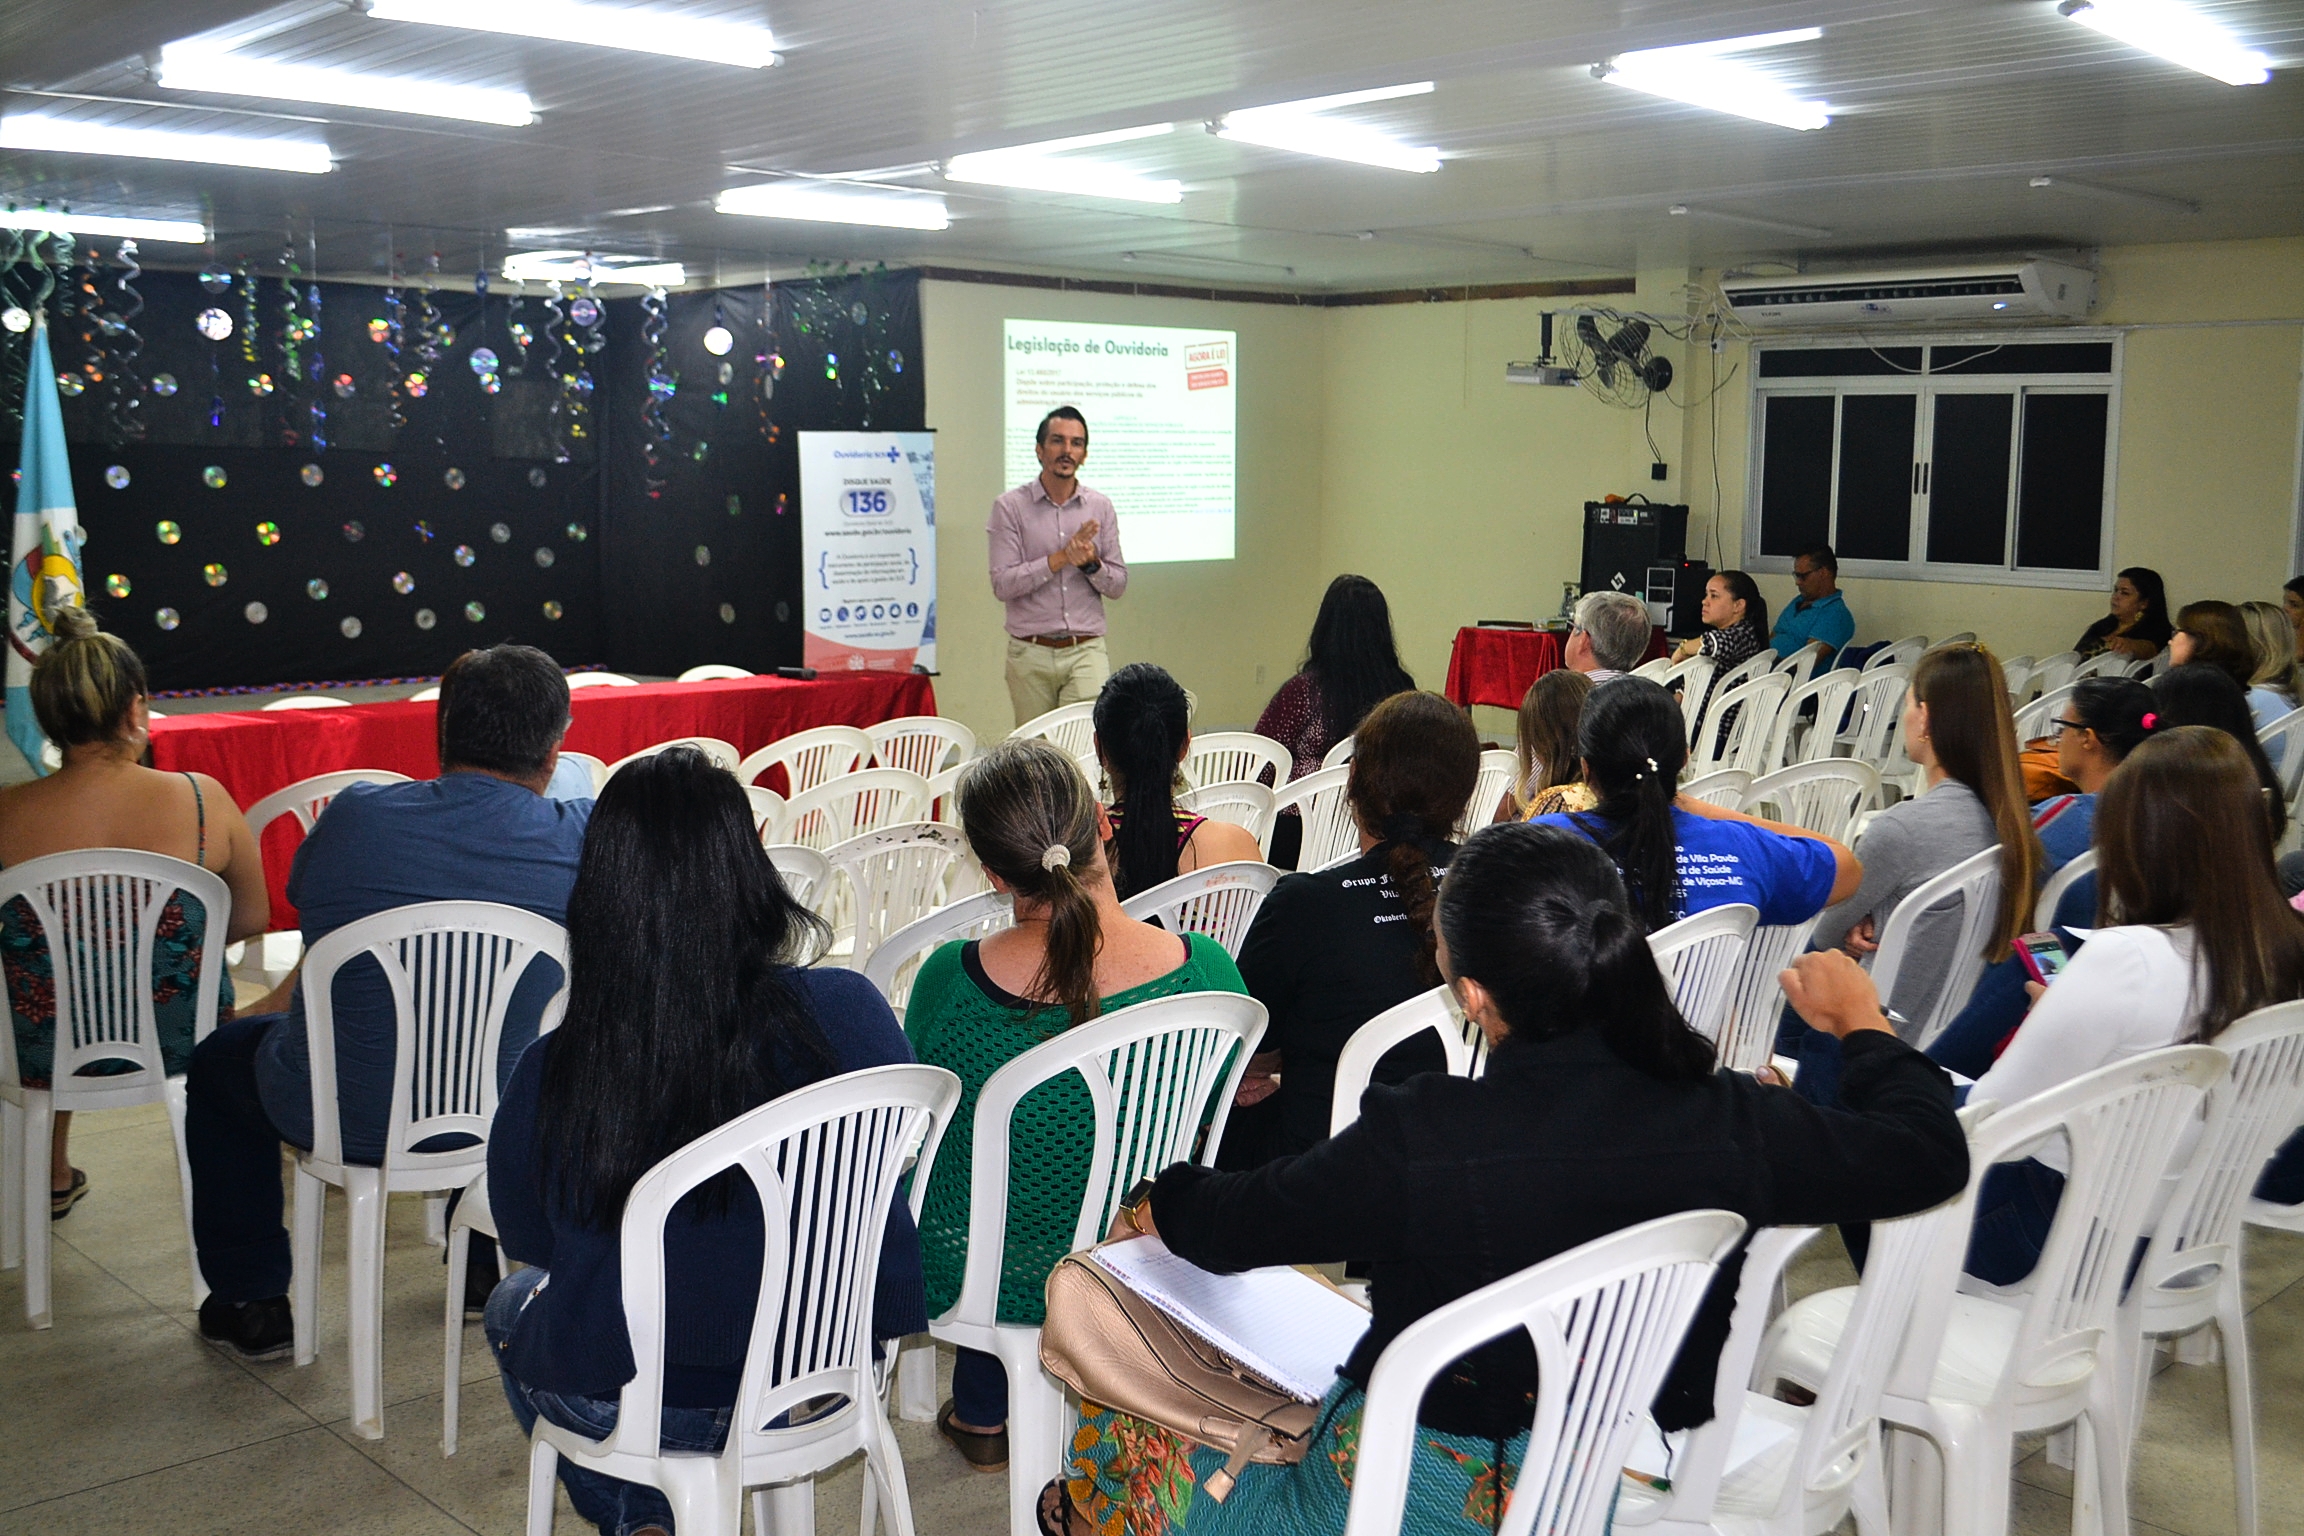 o evento, realizado no auditório do Escola Professora Esther da Costa Santos na noite de ontem para mais de quarenta pessoas, representantes de vários segmentos da sociedade local.